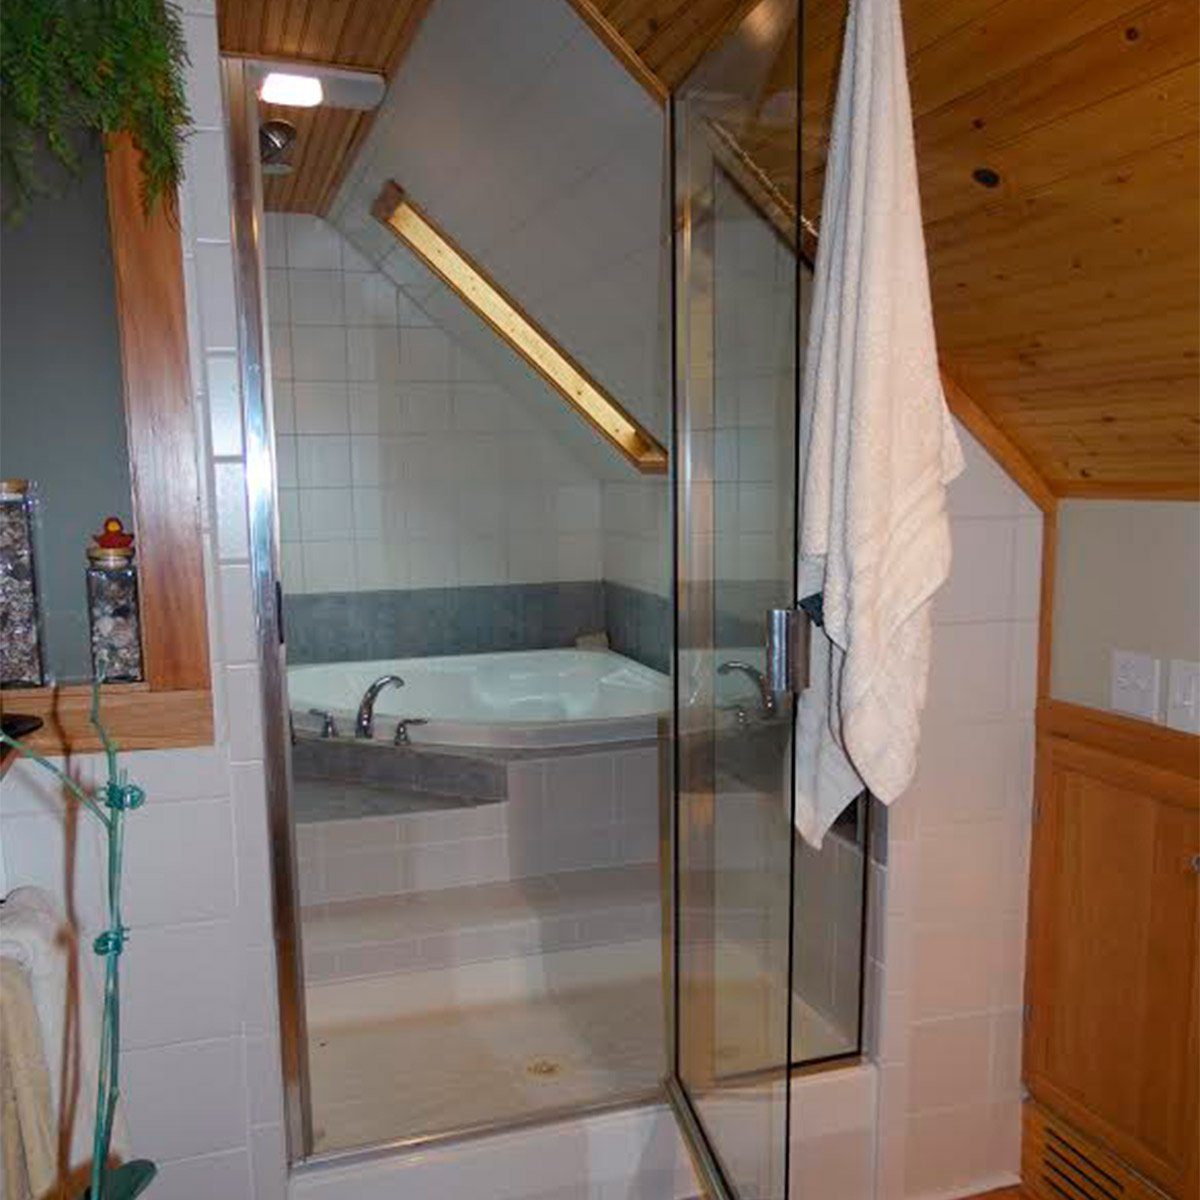 tub inside shower enclosure